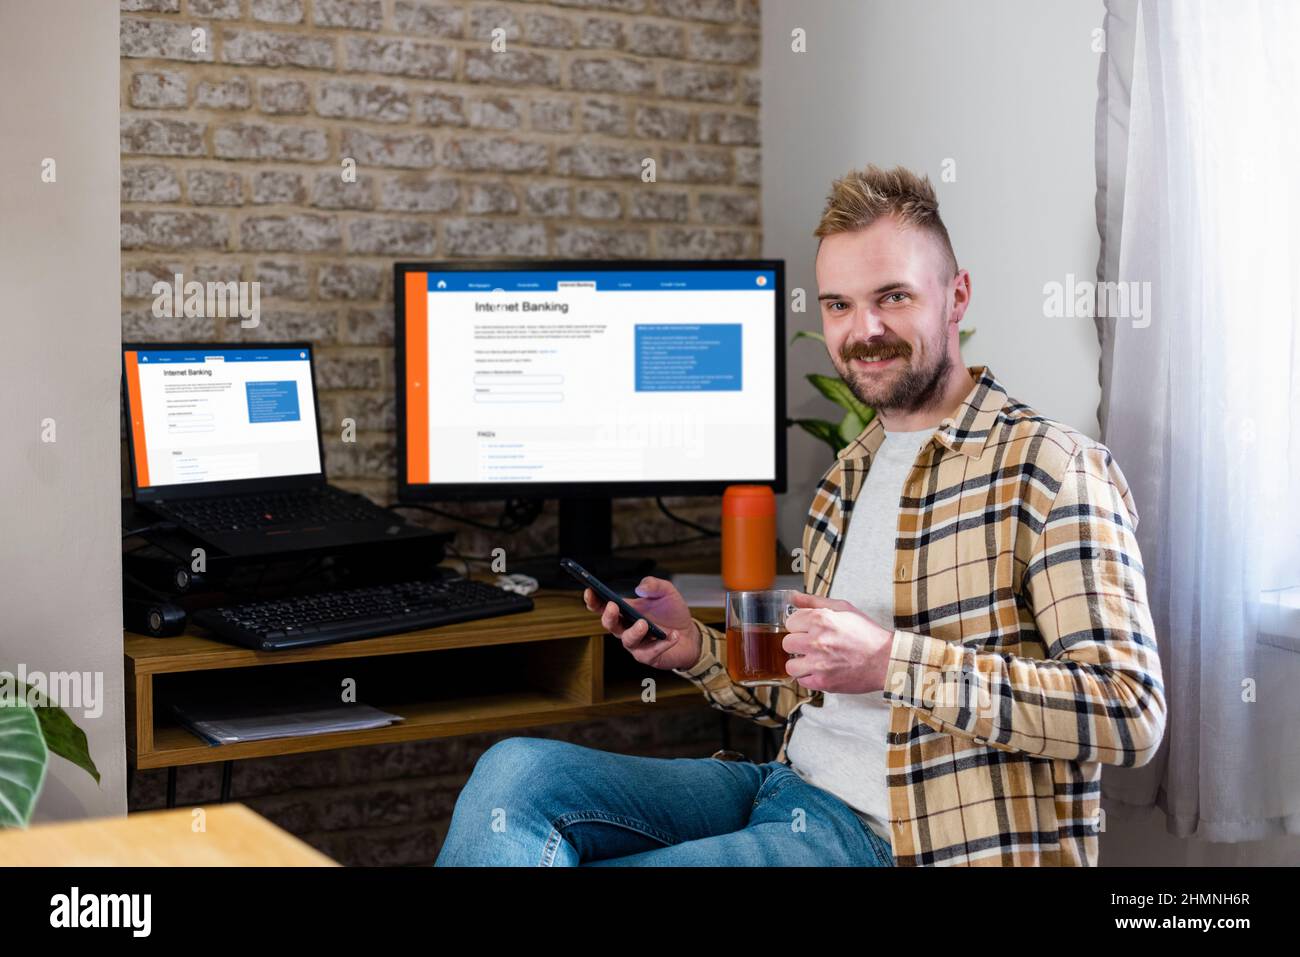 Un uomo è seduto tenendo il telefono sulla scrivania mentre guarda la fotocamera con un sorriso. Internet banking è visualizzato sulle sue schermate di lavoro. Foto Stock